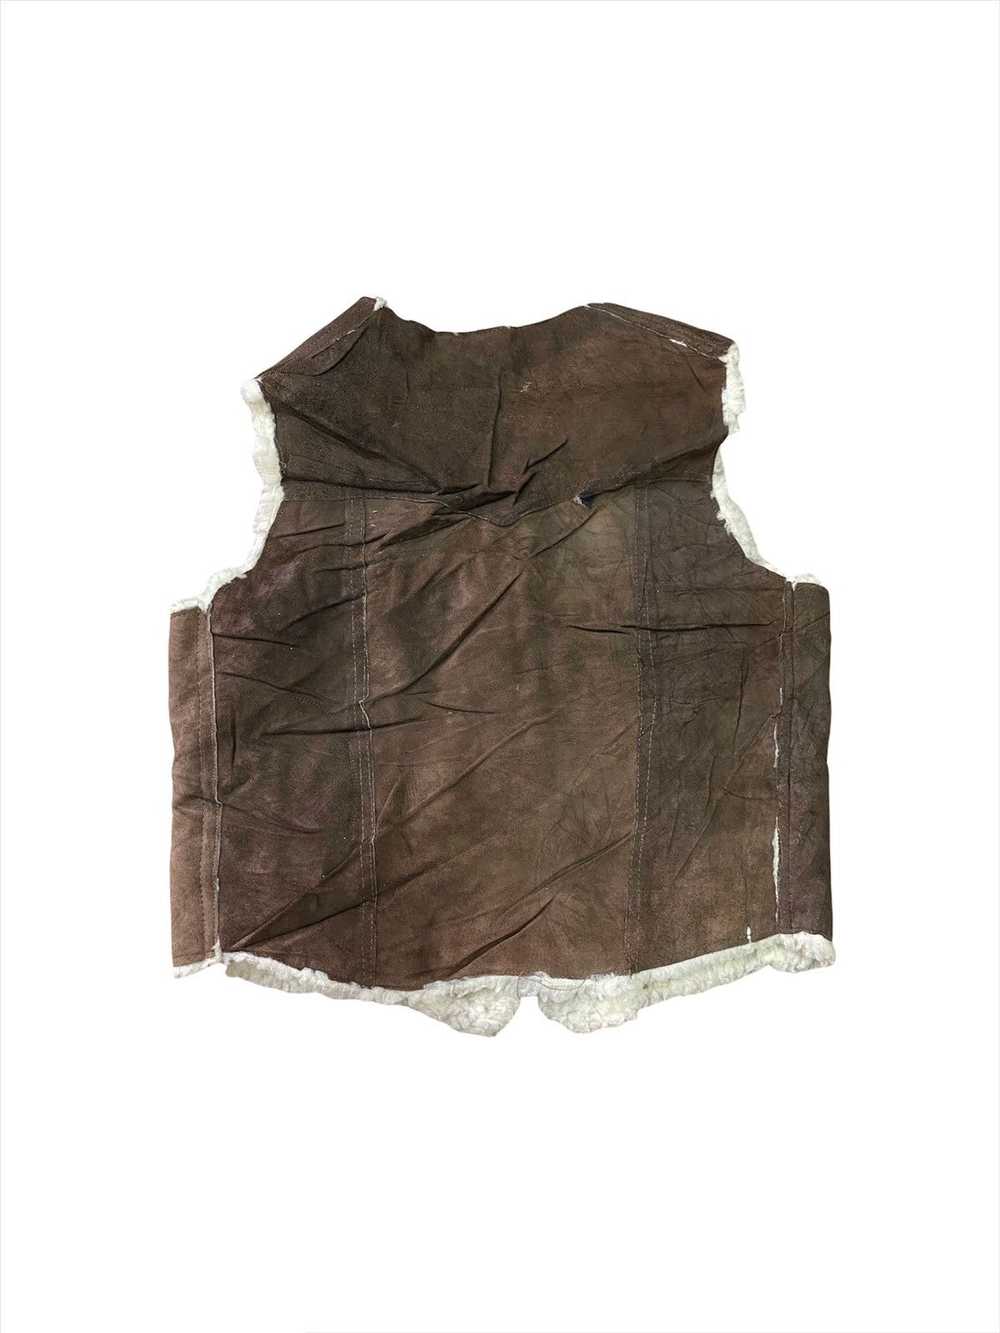 Leather × Mink Fur Coat × Tracey Vest Faur Fur Pa… - image 2